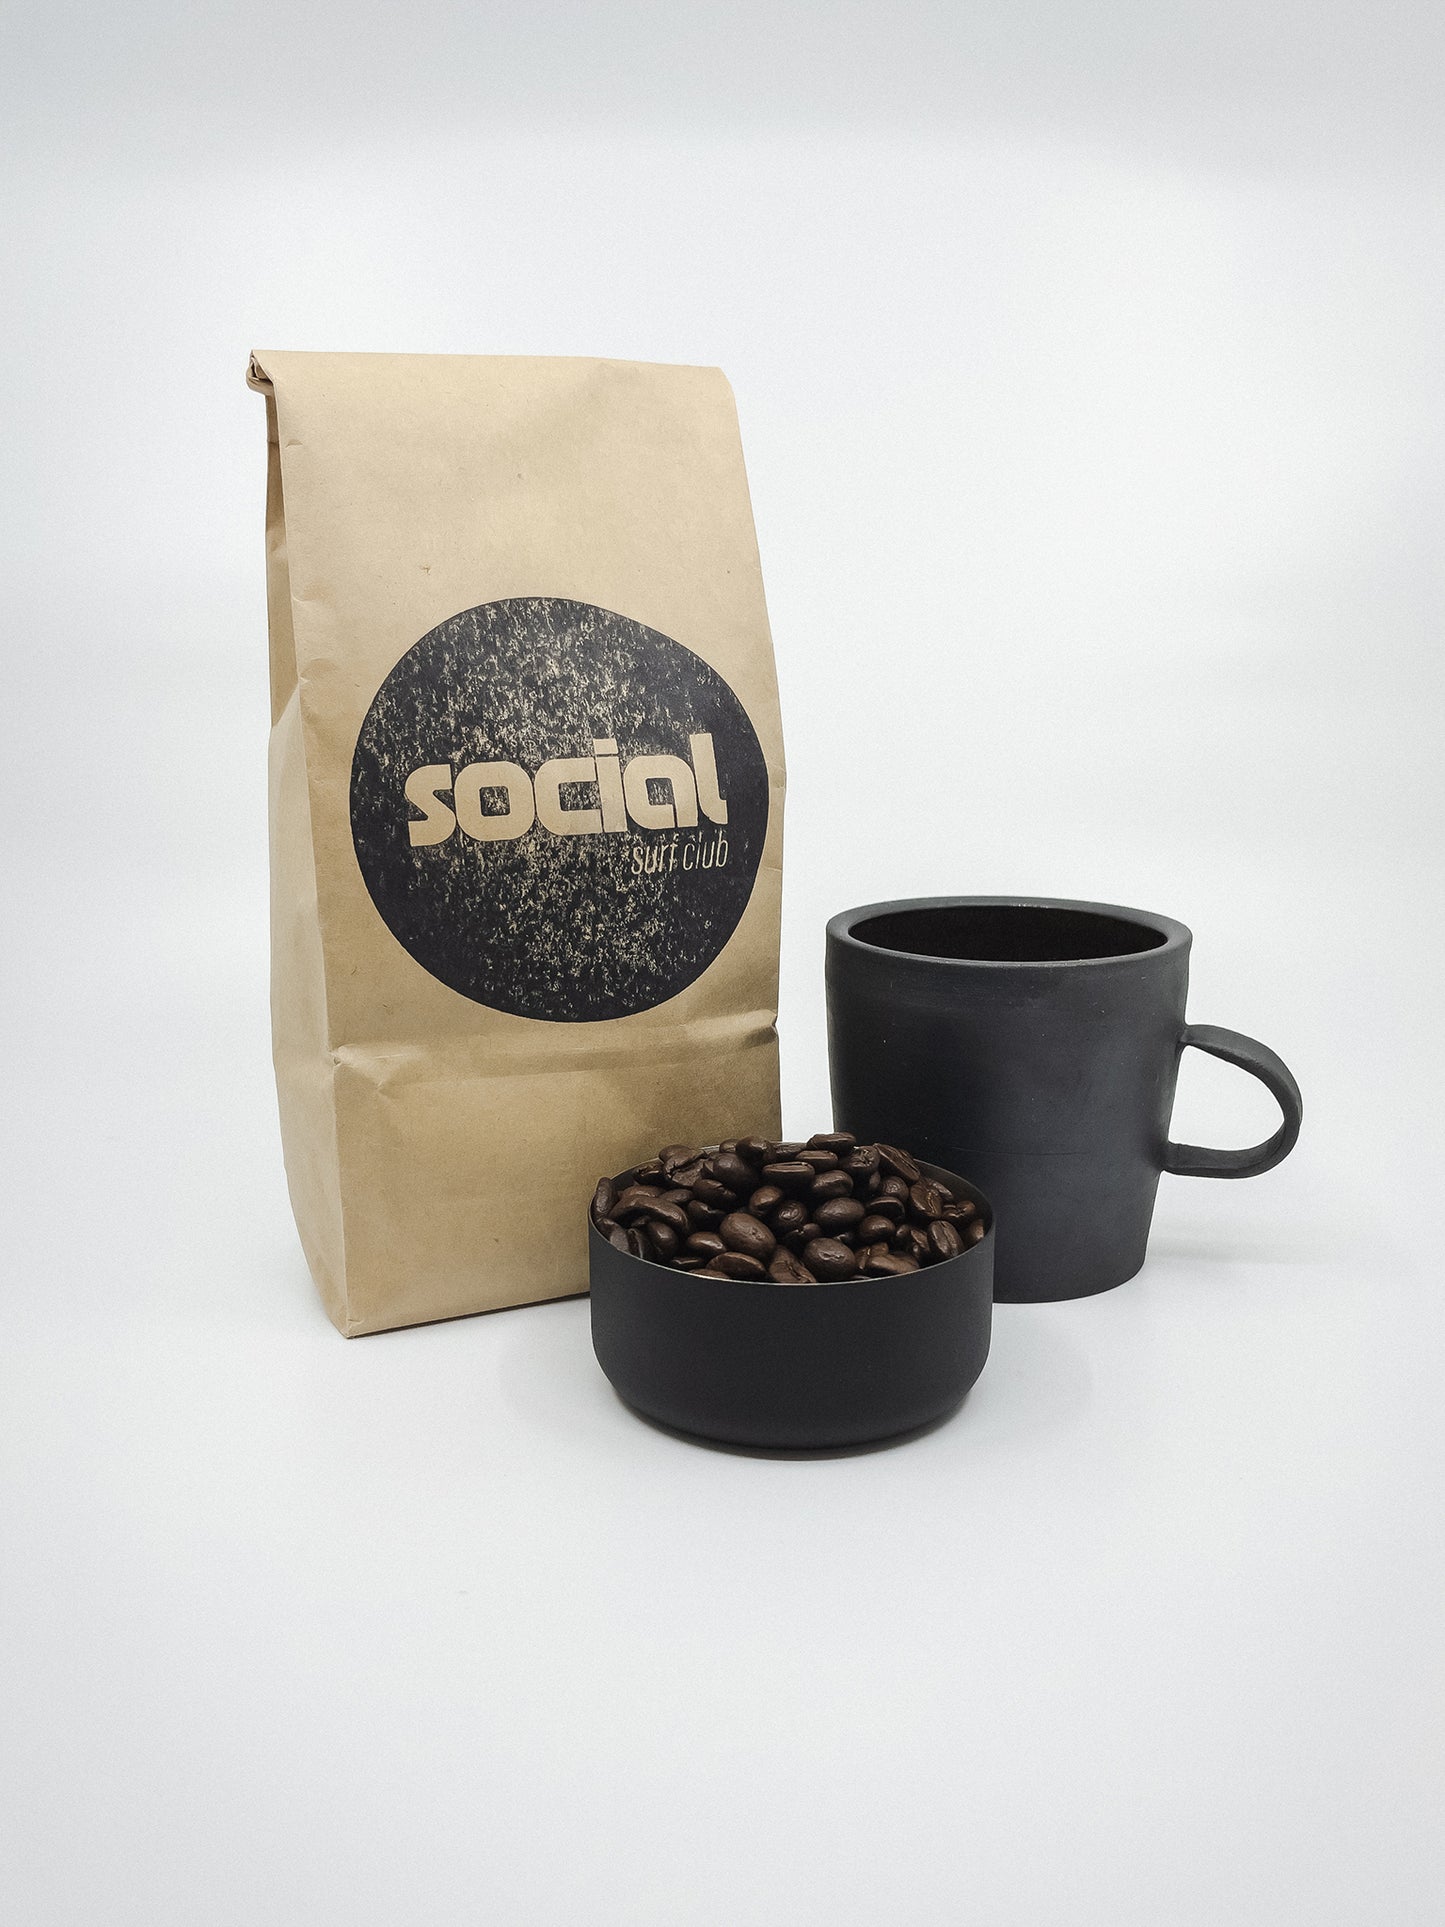 SSC Premium Organic Coffee